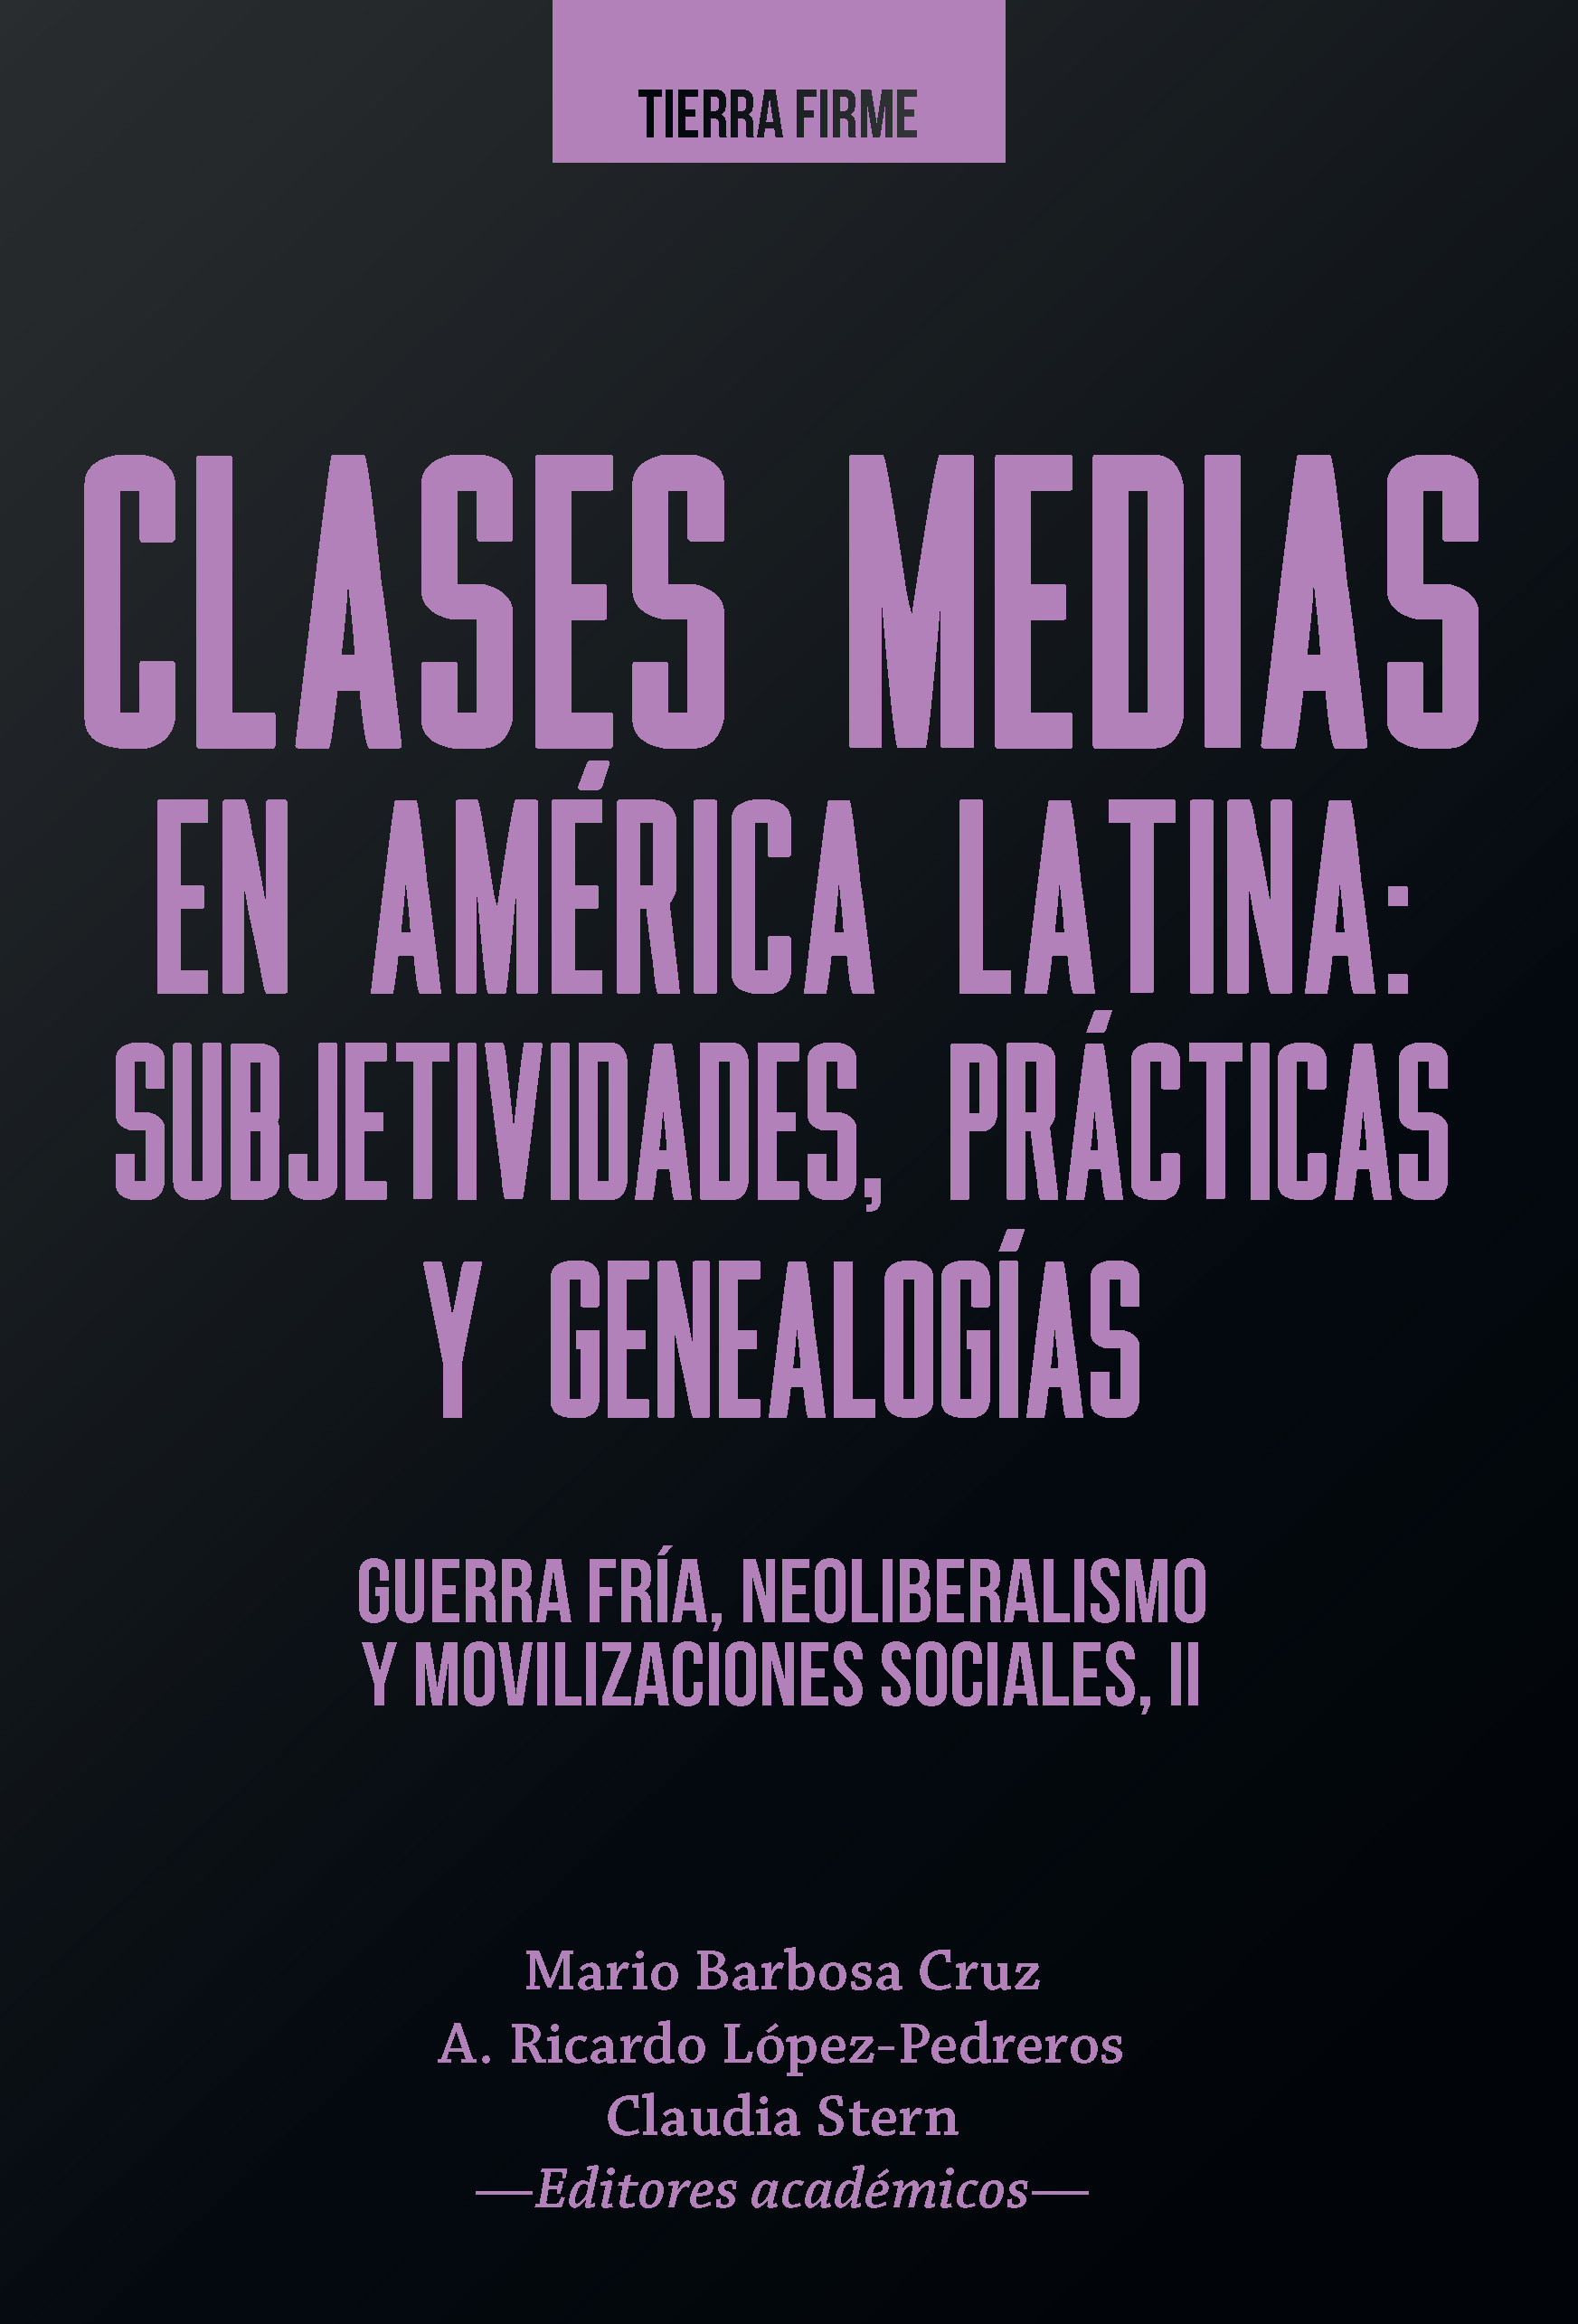 Imagen de portada del libro Clases medias en América Latina: